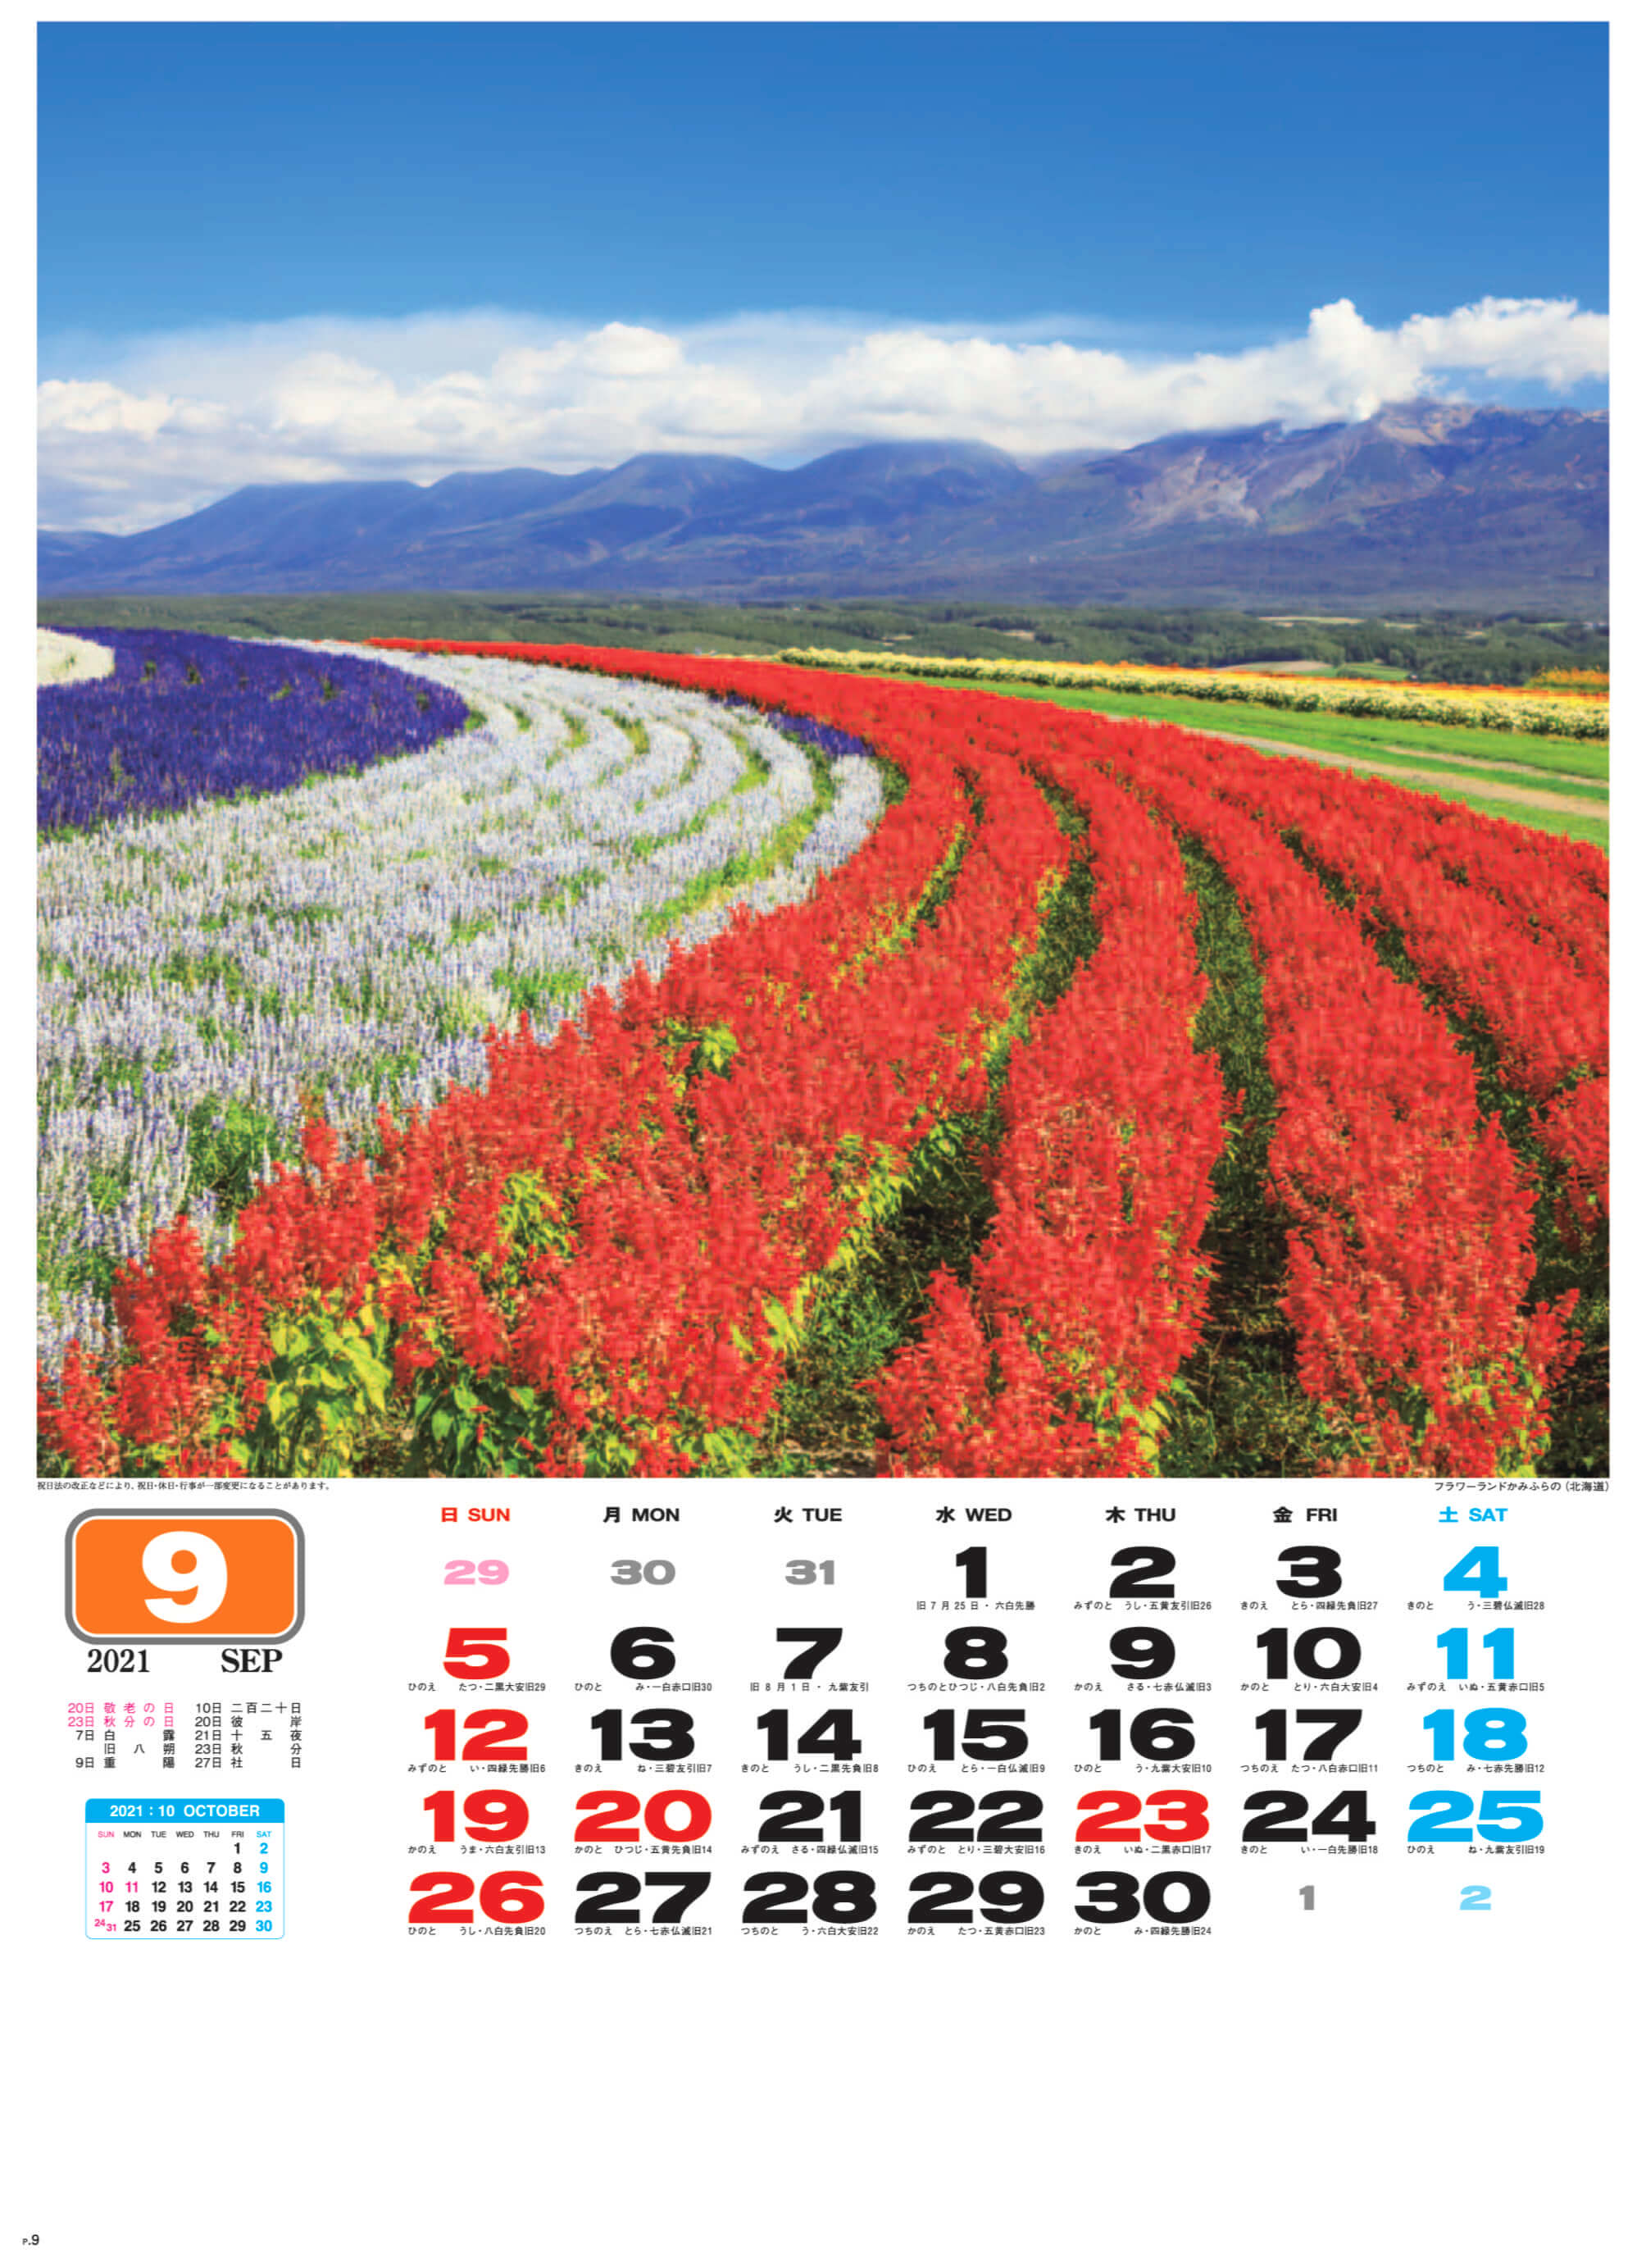 フラワーランドかみふらの(北海道) 美しき日本 2021年カレンダーの画像